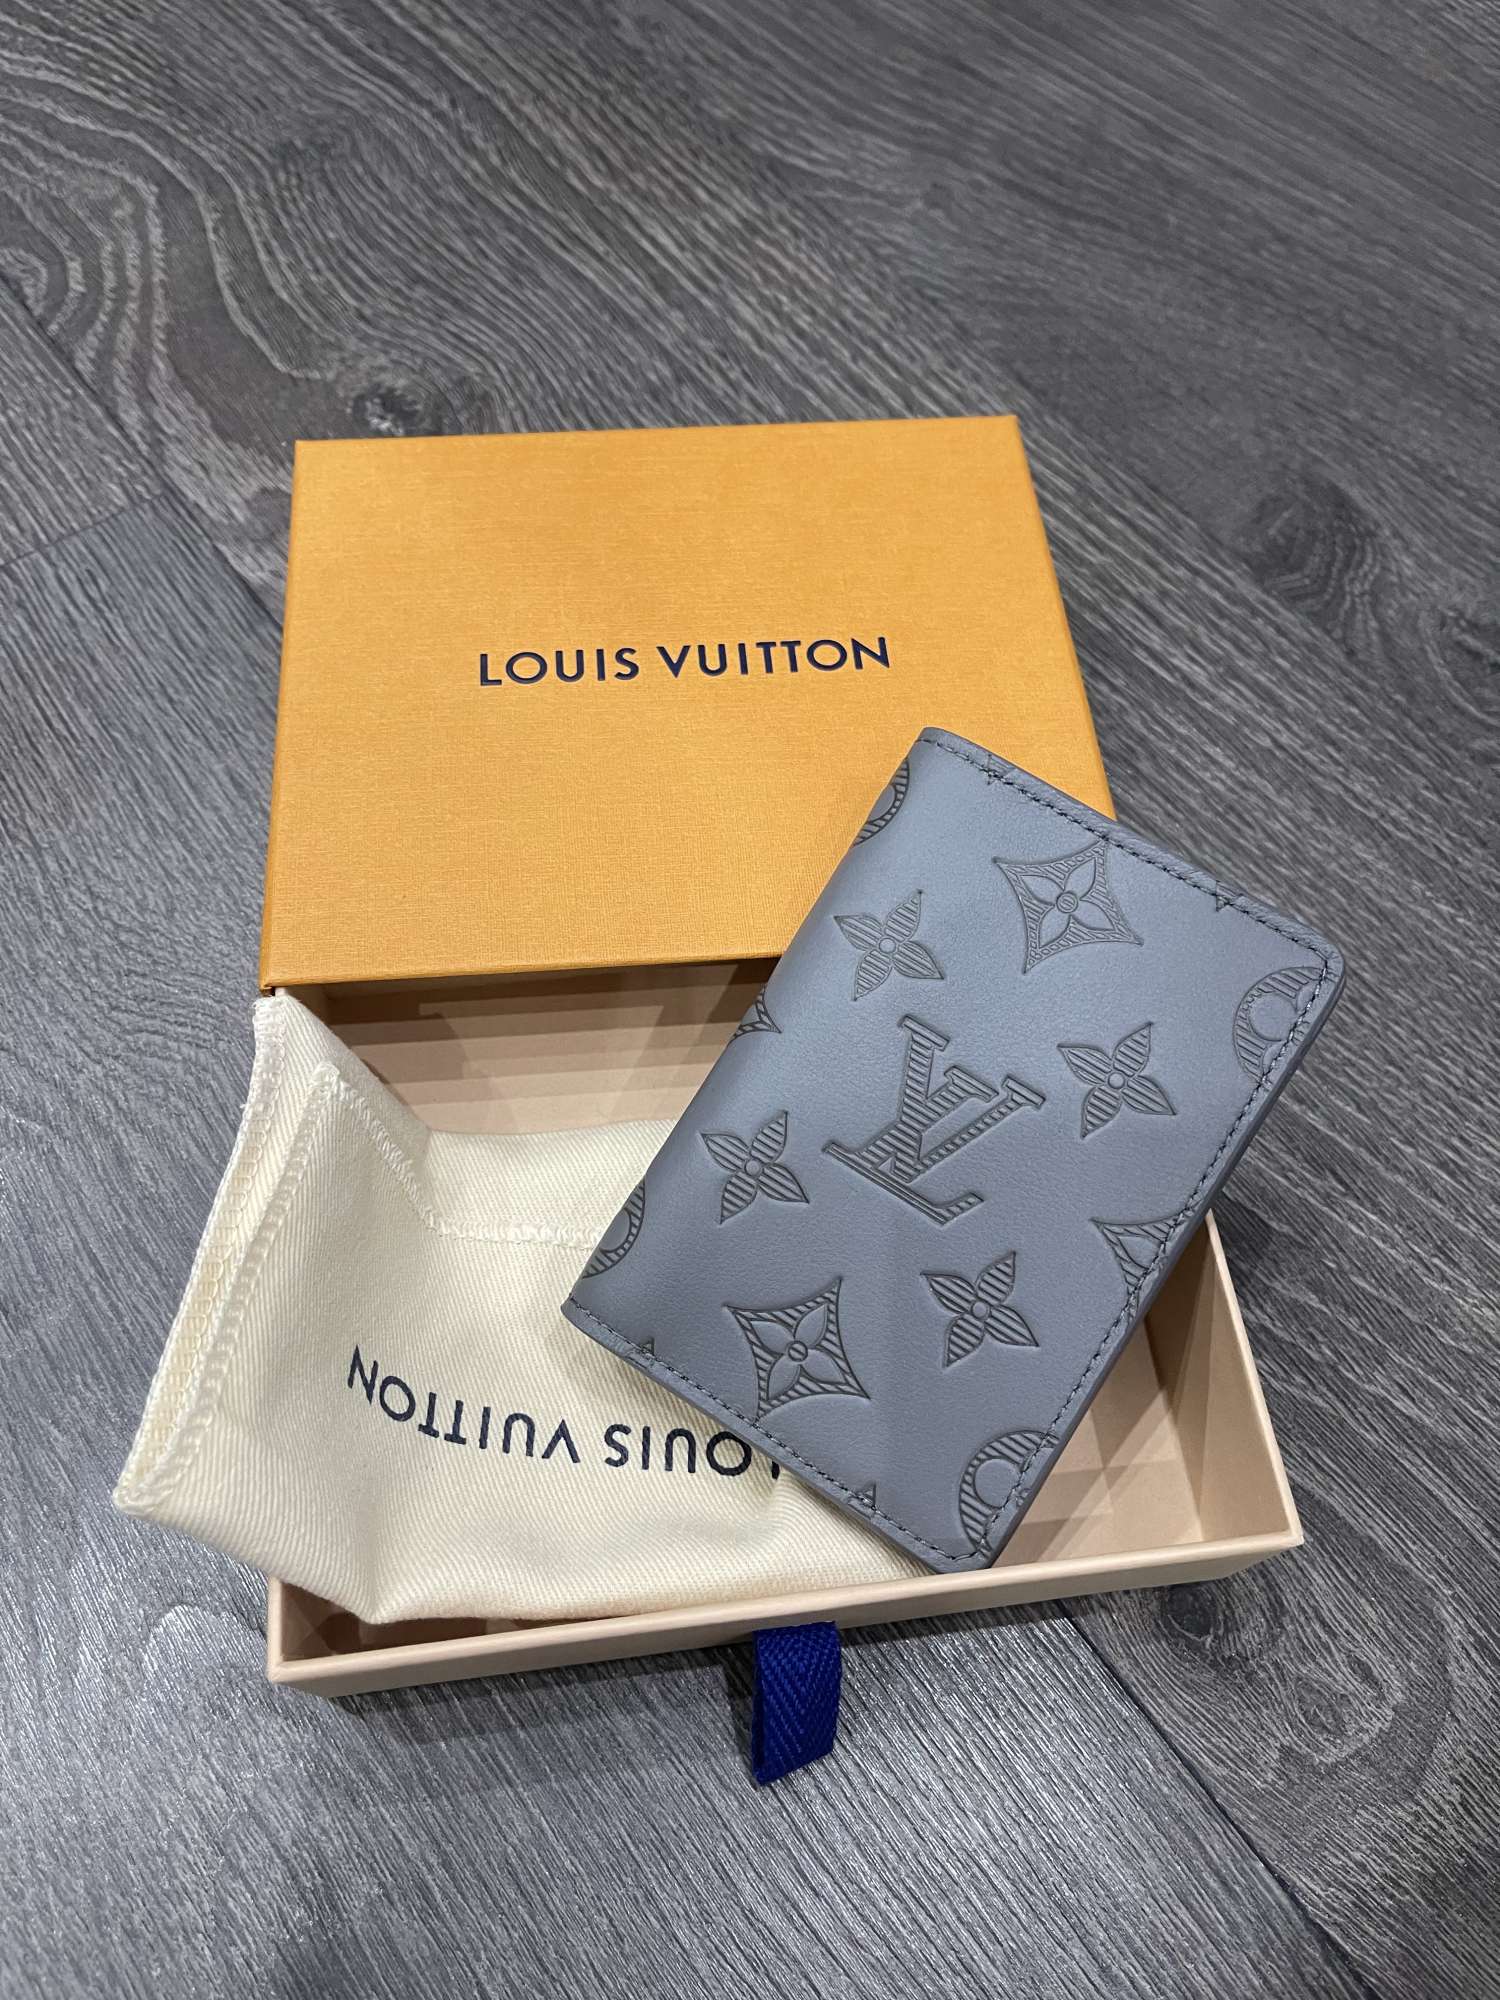 Louis Vuitton cardholder limited